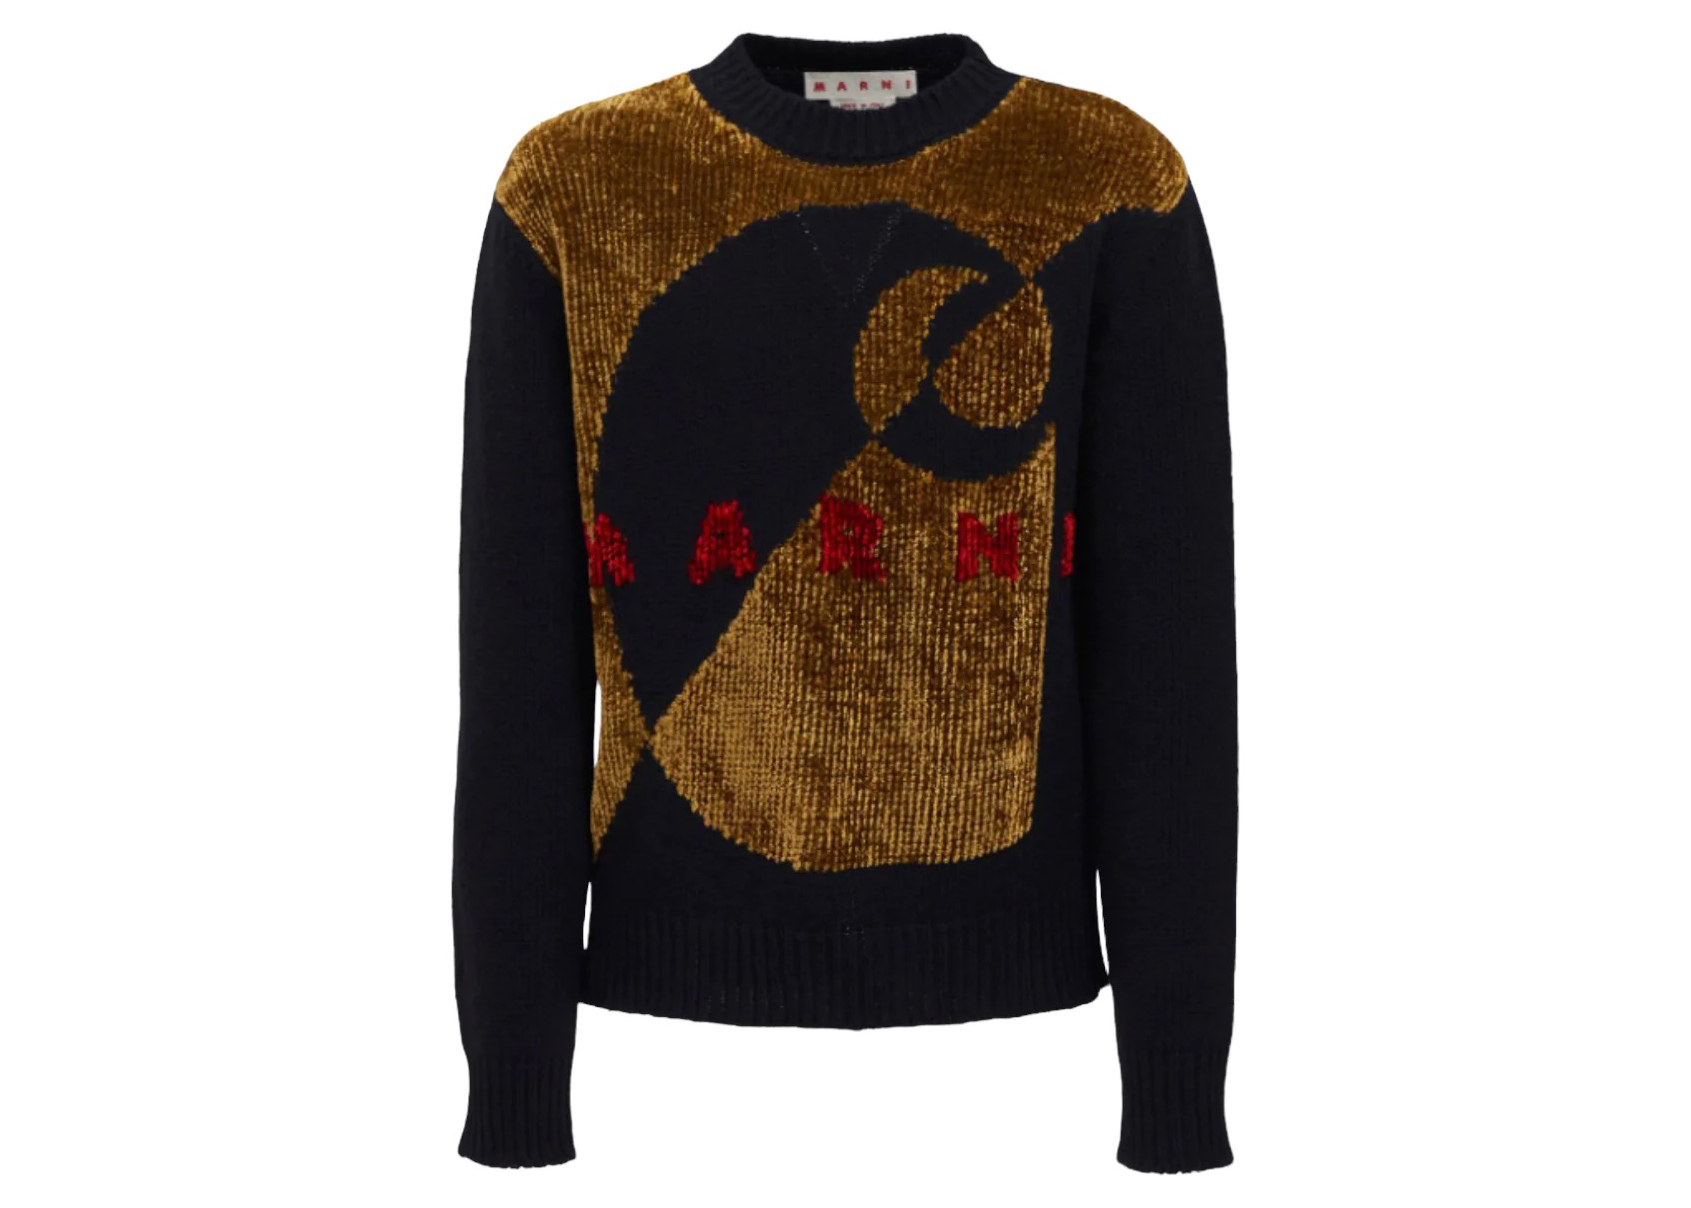 Marni x Carhartt WIP Sweater Black Men's - SS23 - US